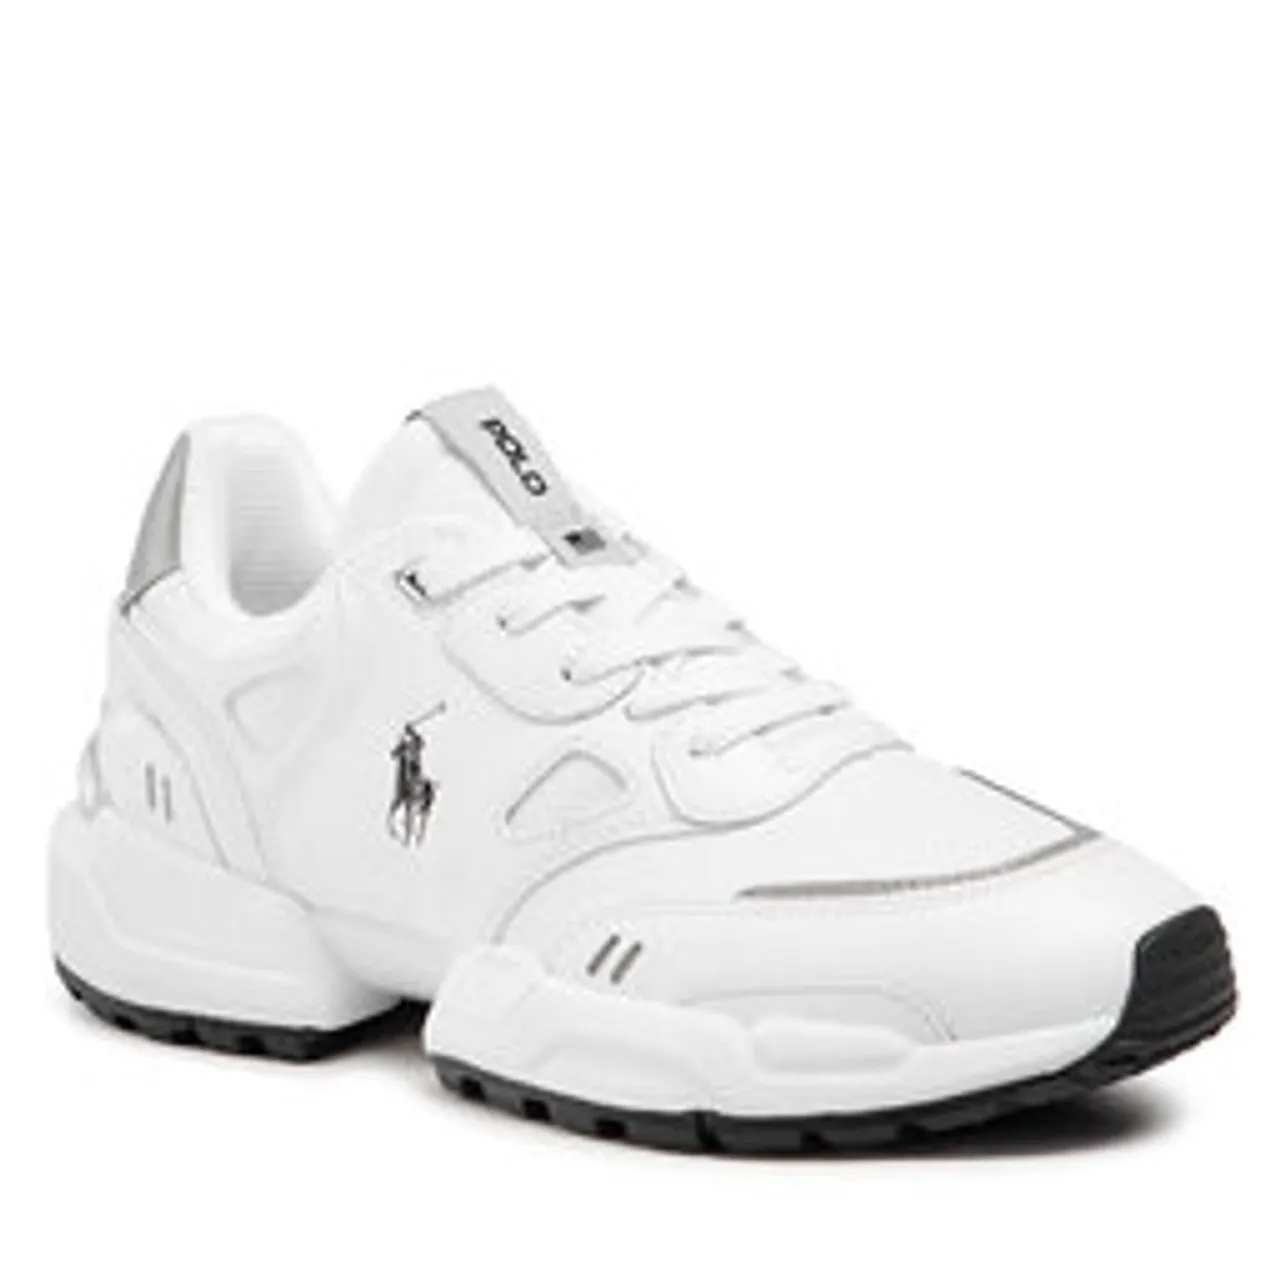 Sneakers Polo Ralph Lauren Polo Jgr Pp 809835371001 White/Black Pp